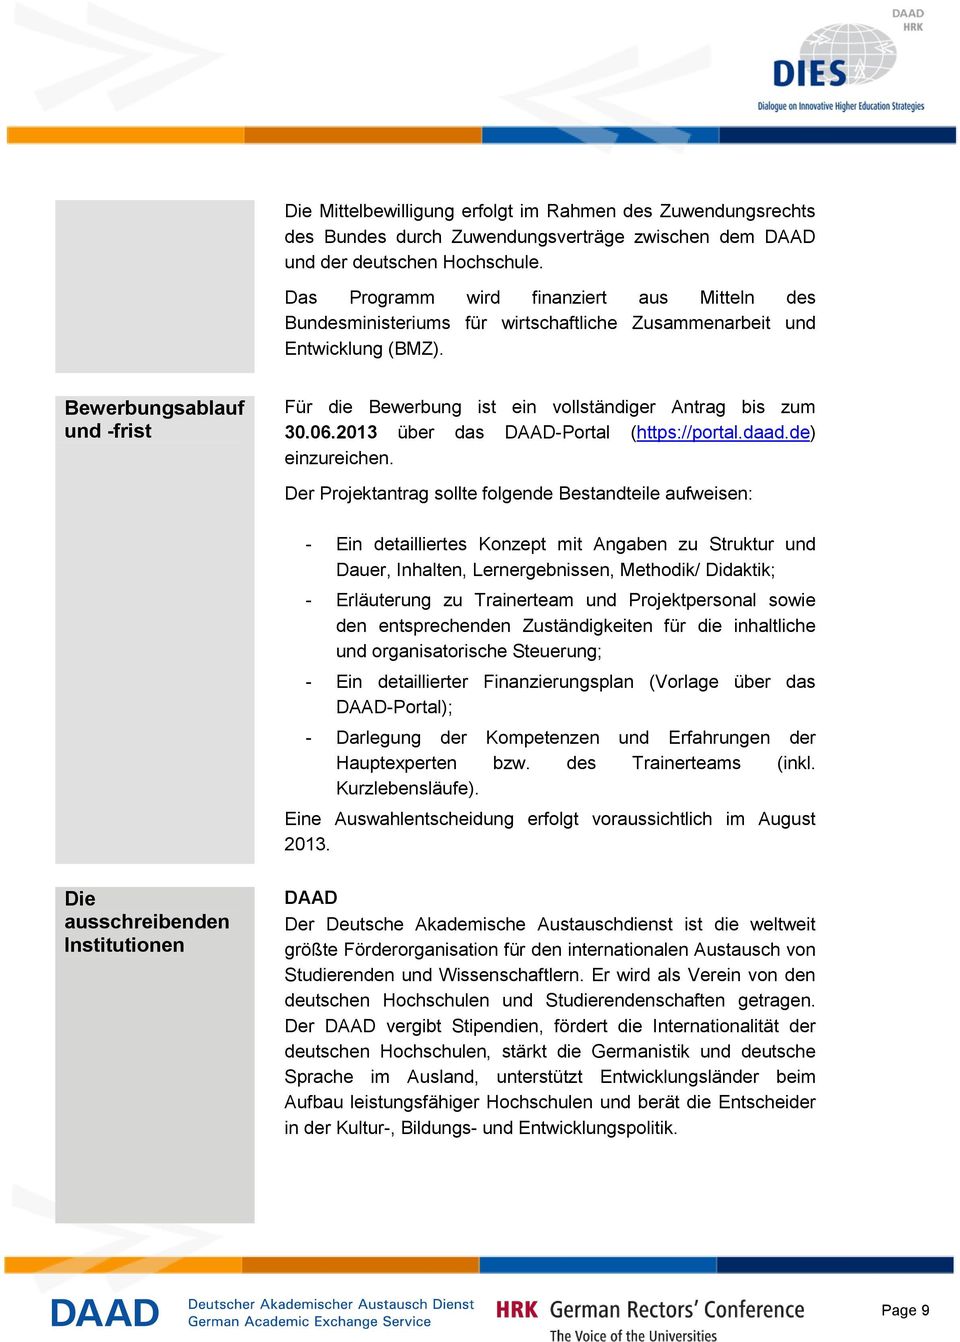 Bewerbungsablauf und -frist Für die Bewerbung ist ein vollständiger Antrag bis zum 30.06.2013 über das DAAD-Portal (https://portal.daad.de) einzureichen.